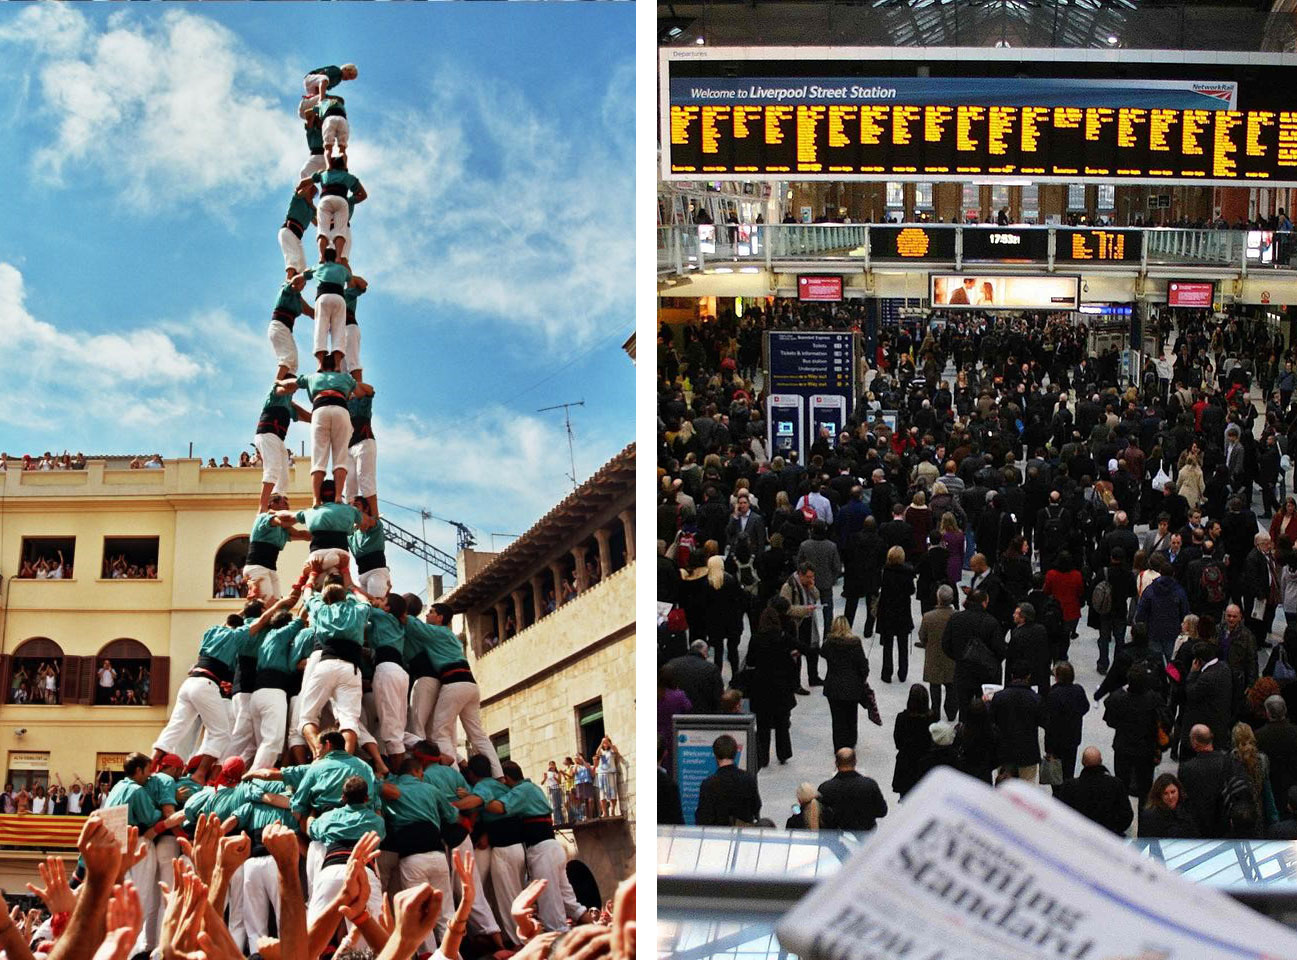 Två bilder som visar ett torn av människor till vänster och Liverpool Street Station till höger.